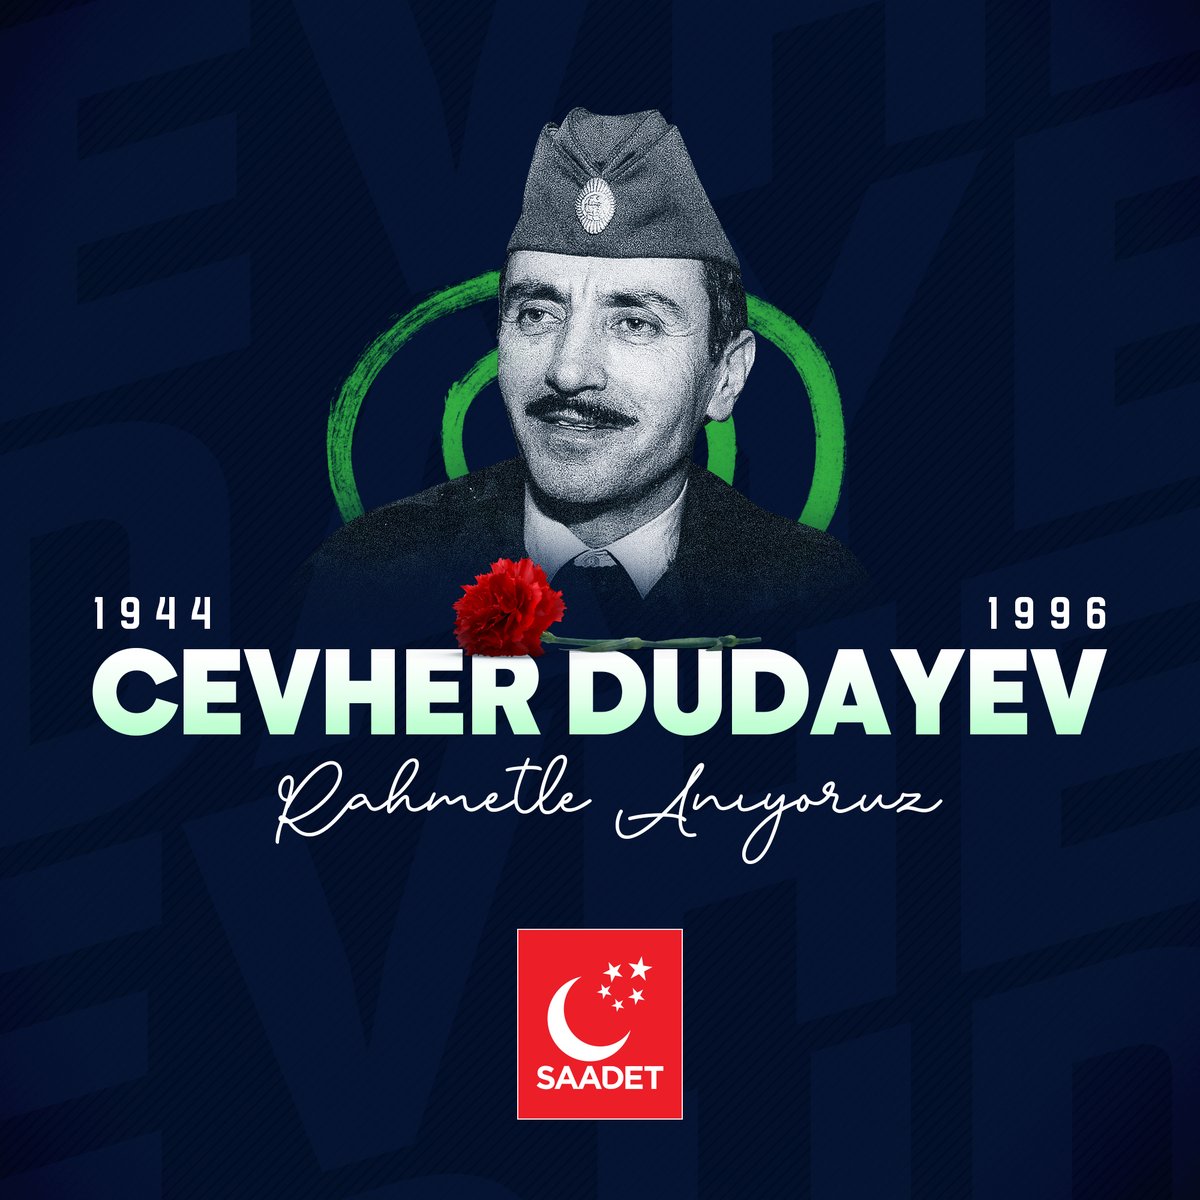 Çeçenistan’ın bağımsızlık mücadelesinin öncü generali Cevher Dudayev’i şehadetinin yıl dönümünde rahmetle anıyoruz.